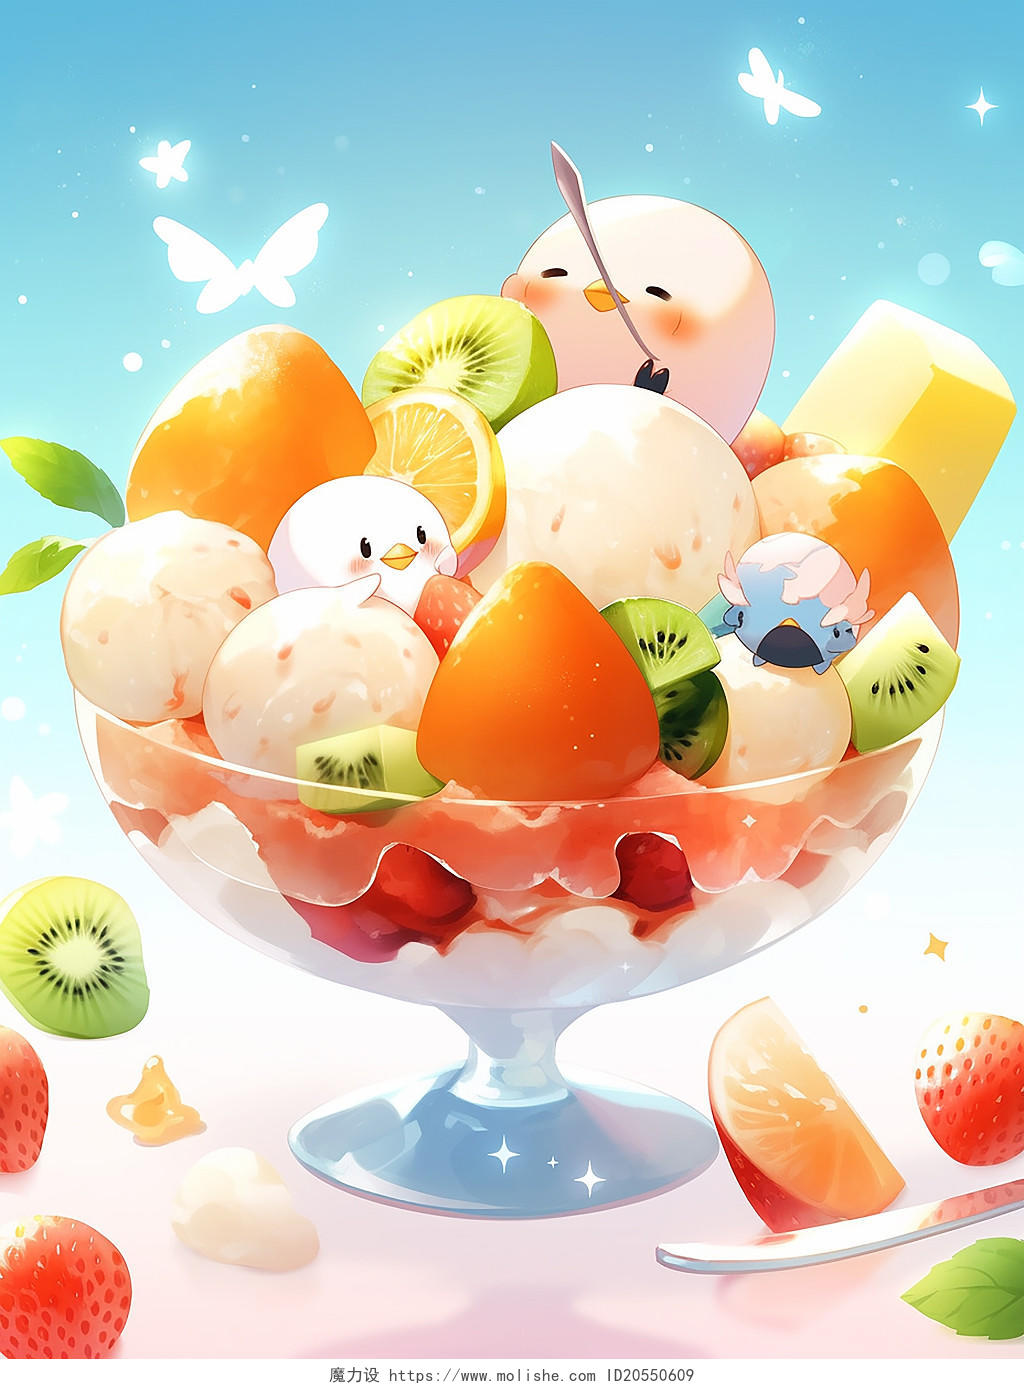 彩色夏天果汁牛奶水果冰淇淋甜点下午茶插画场景